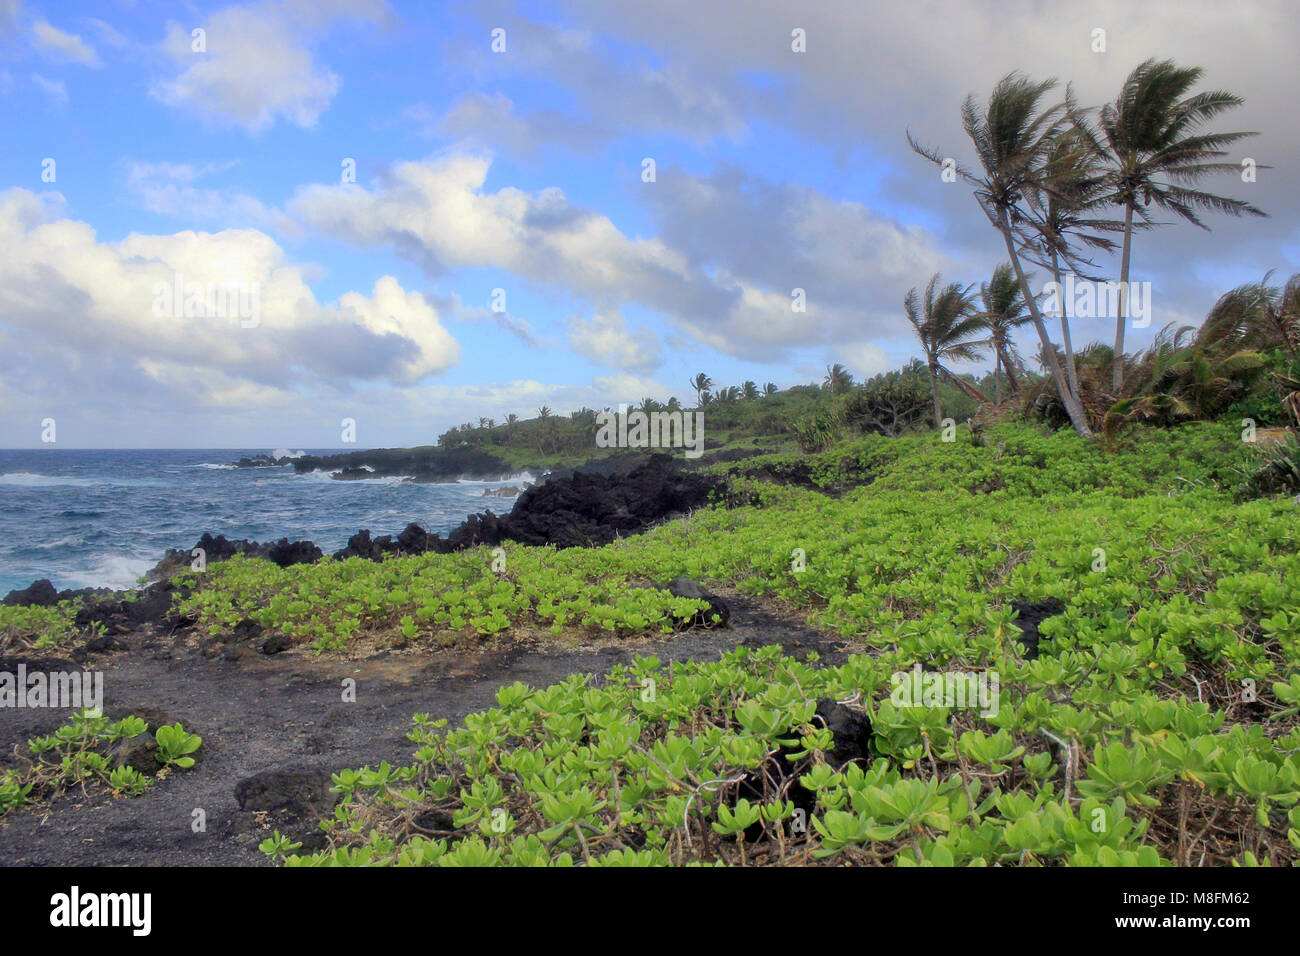 Volcanic rocks at the Waianapanapa State Park on the Hawaiian island of Maui. Stock Photo